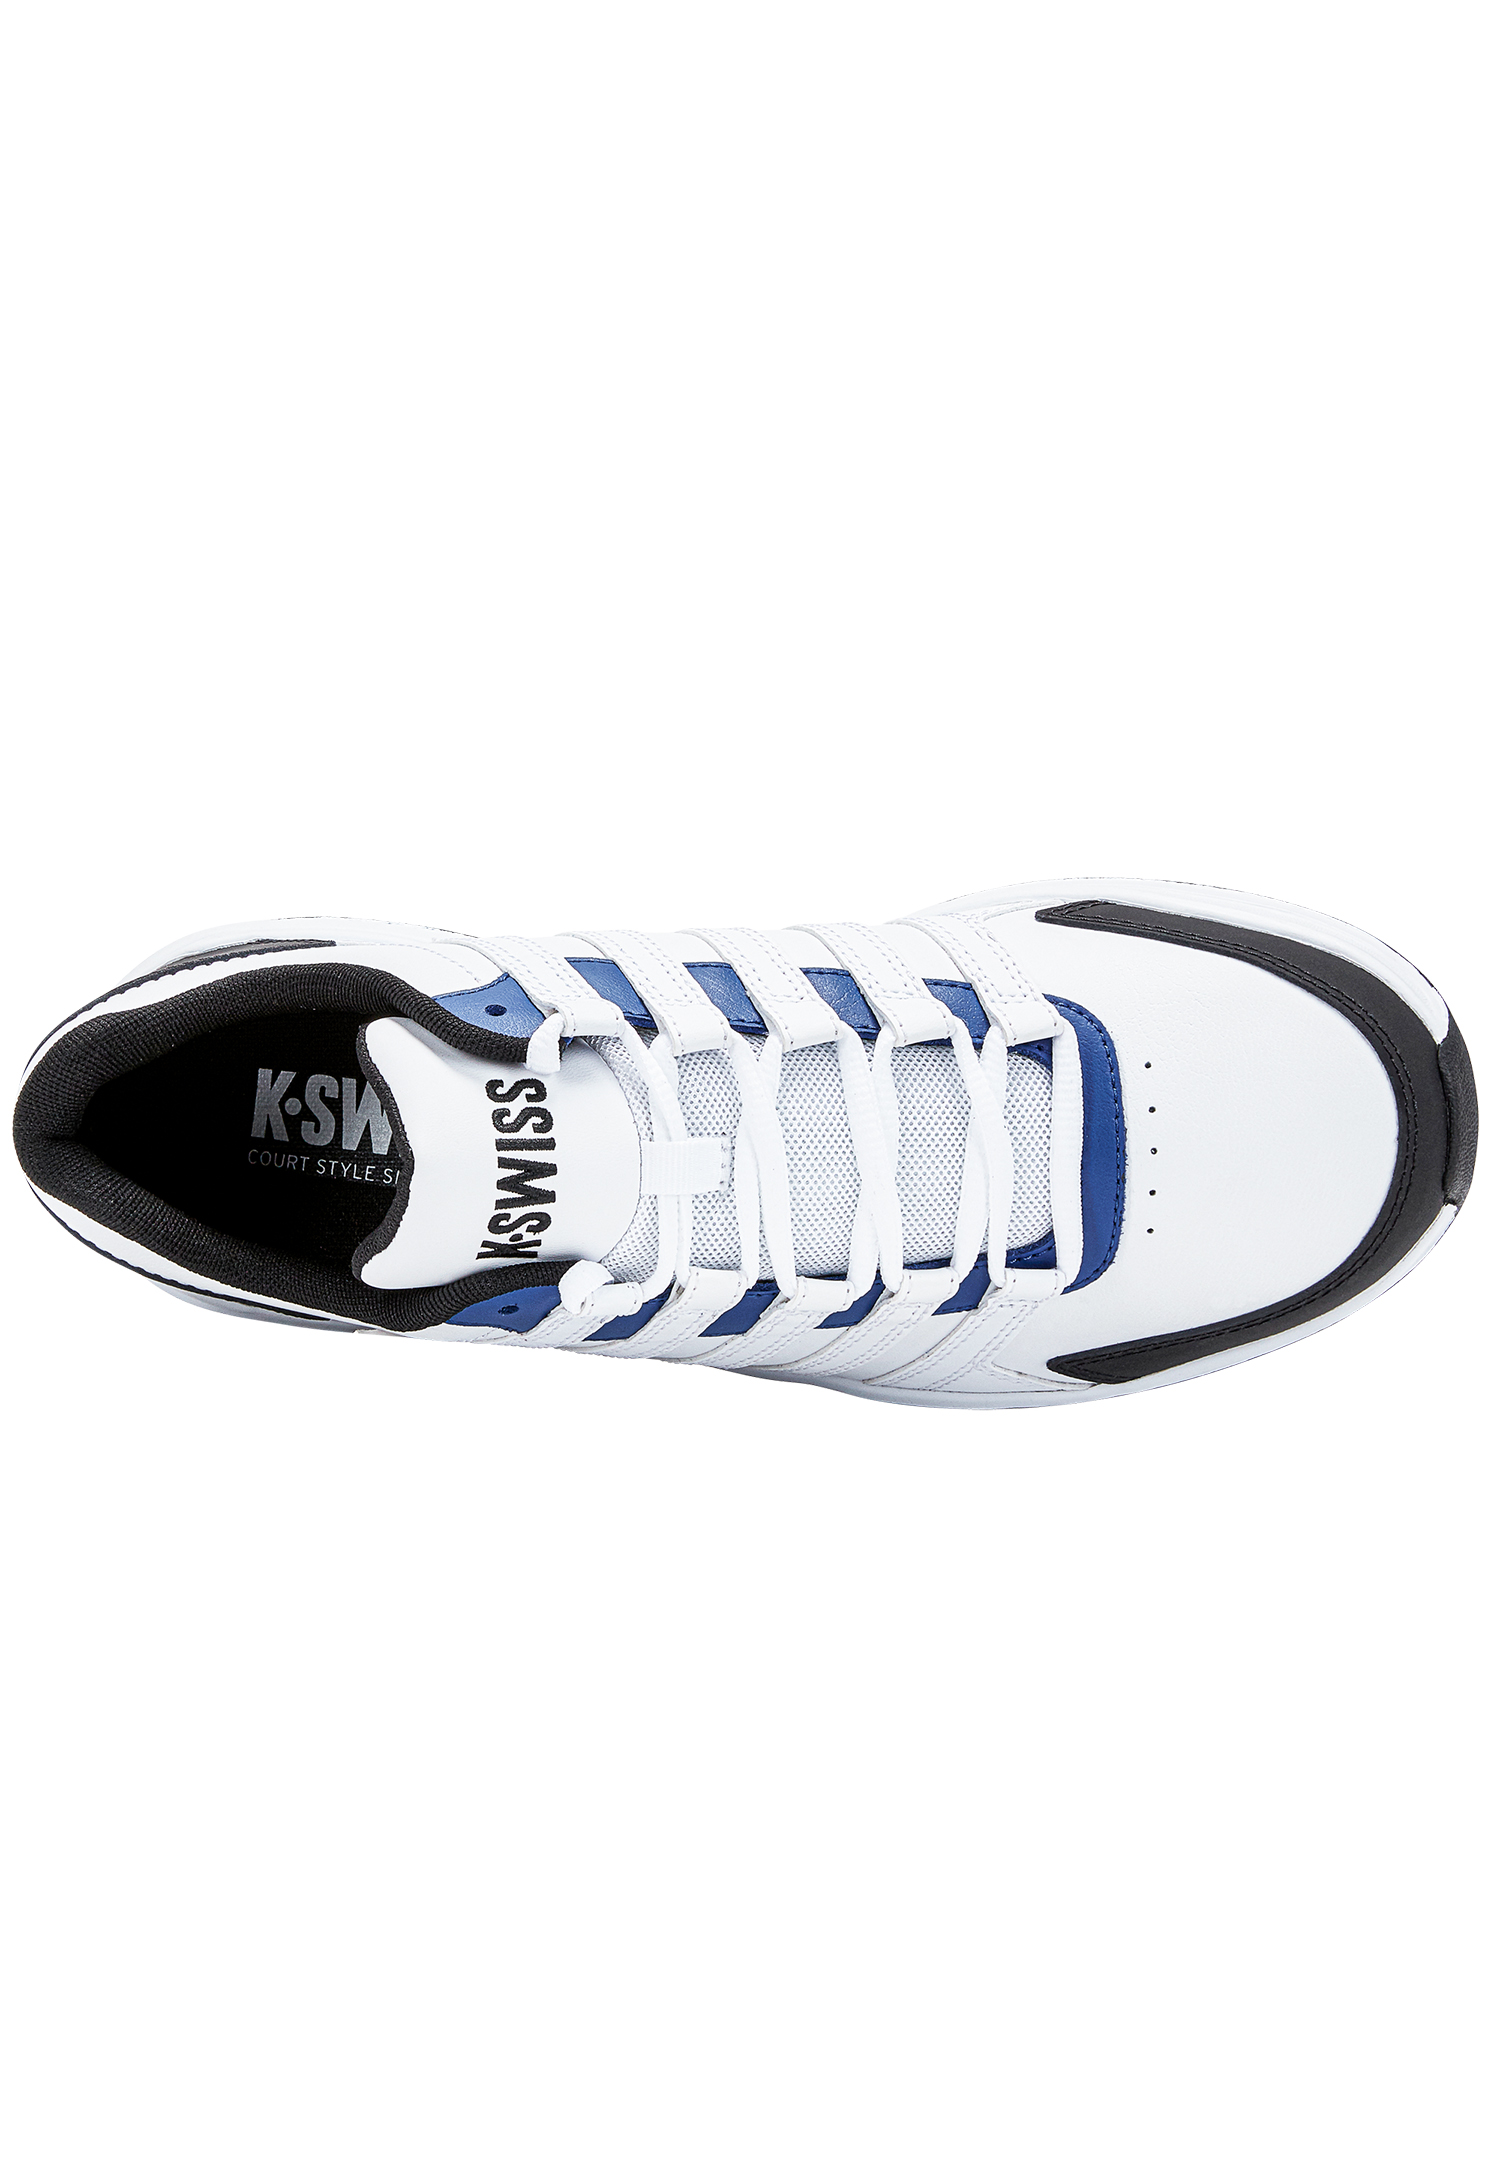 K-Swiss Herren Vista Trainer Sneaker Sportschuh 07000-996-M weiss/blau/schwarz